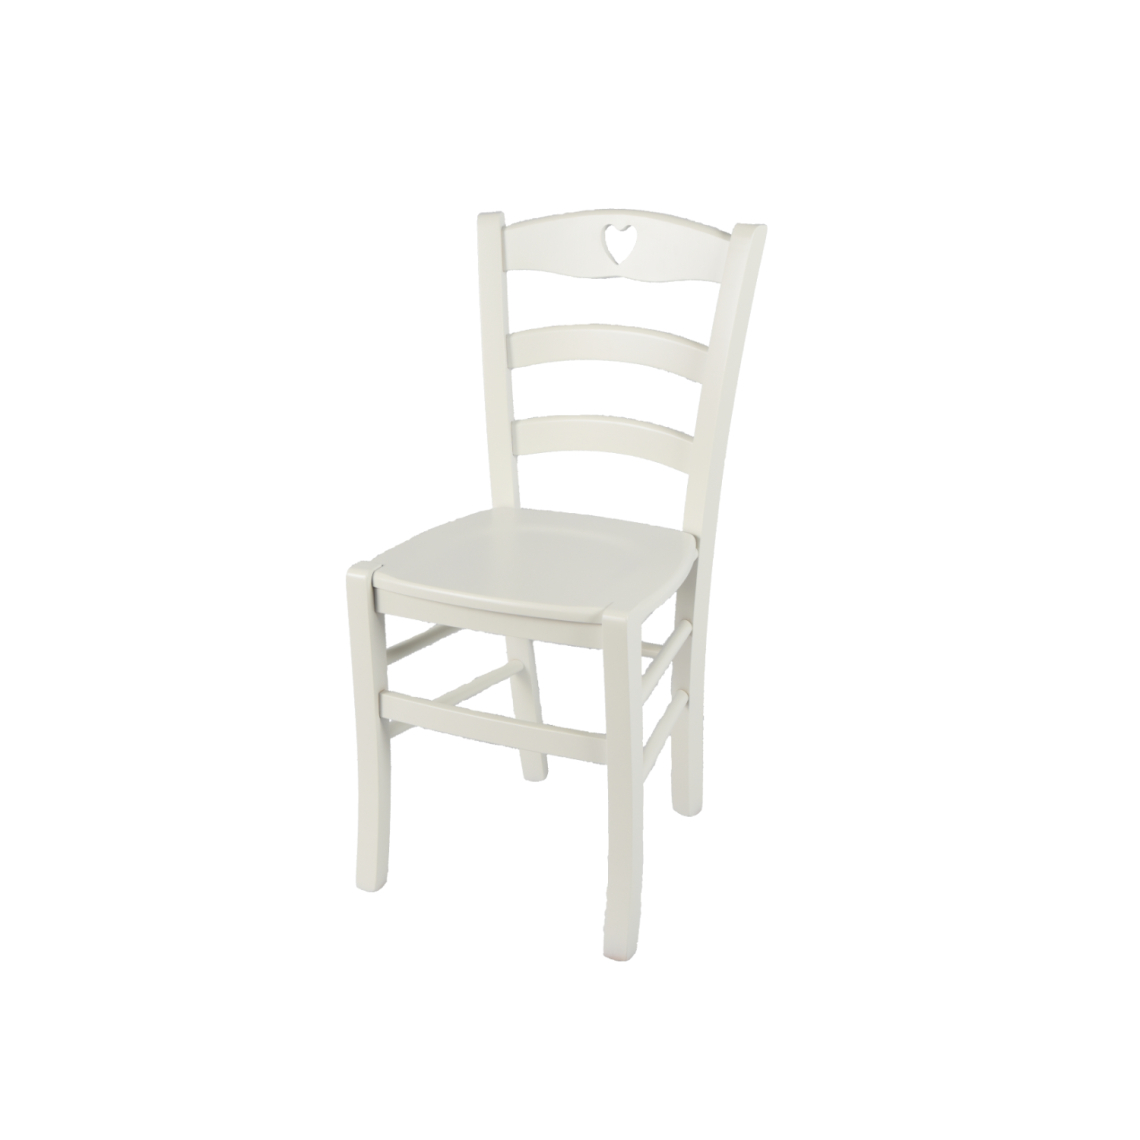 T M C S - t m c s Tommychairs - Chaise CUORE pour cuisine, bar et salle à manger, robuste structure en bois de hêtre peindré en couleur blanc glace et assise en bois - Chaises